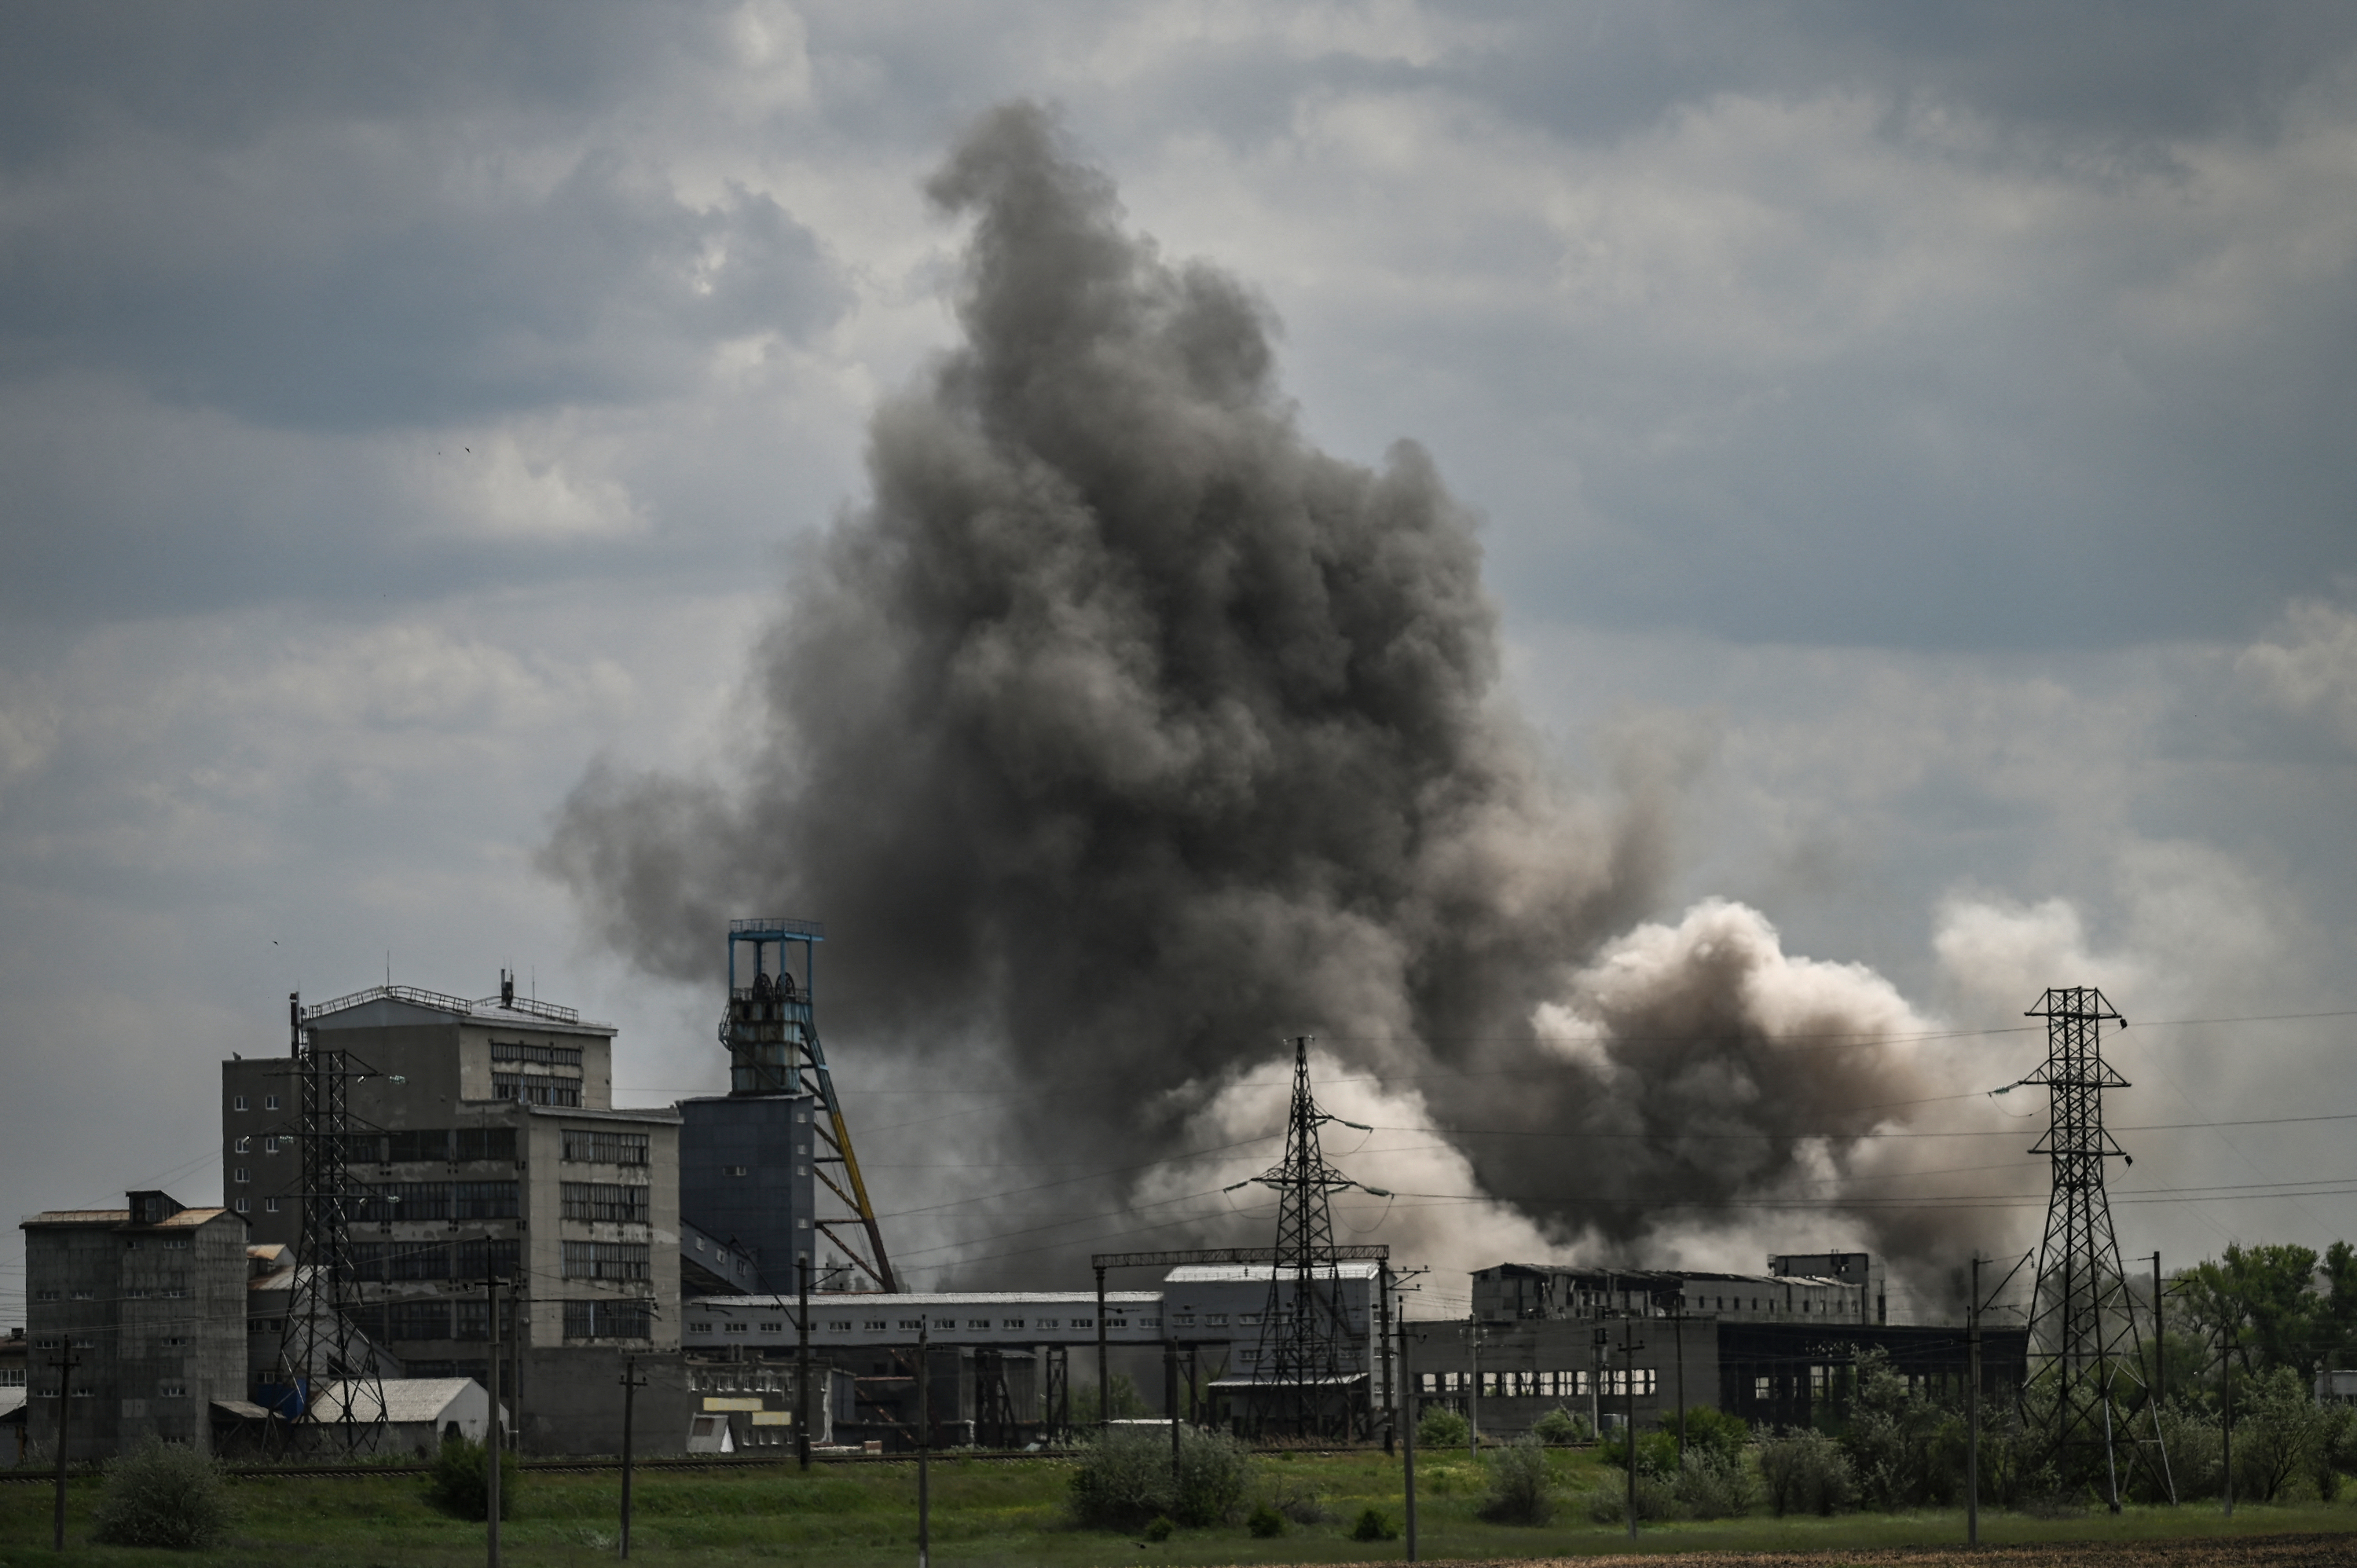 Füst- és profelhő gomolyog az orosz tüzérség támadása után Szoledar városában egy gyárépület fölött. Szoledar Bahmut és Liszicsanszk között található, a Szeverodonecket Ukrajna többi részével összekötő főút mentén, amiért most nagy csatát vívnak az oroszok az ukránokkal.